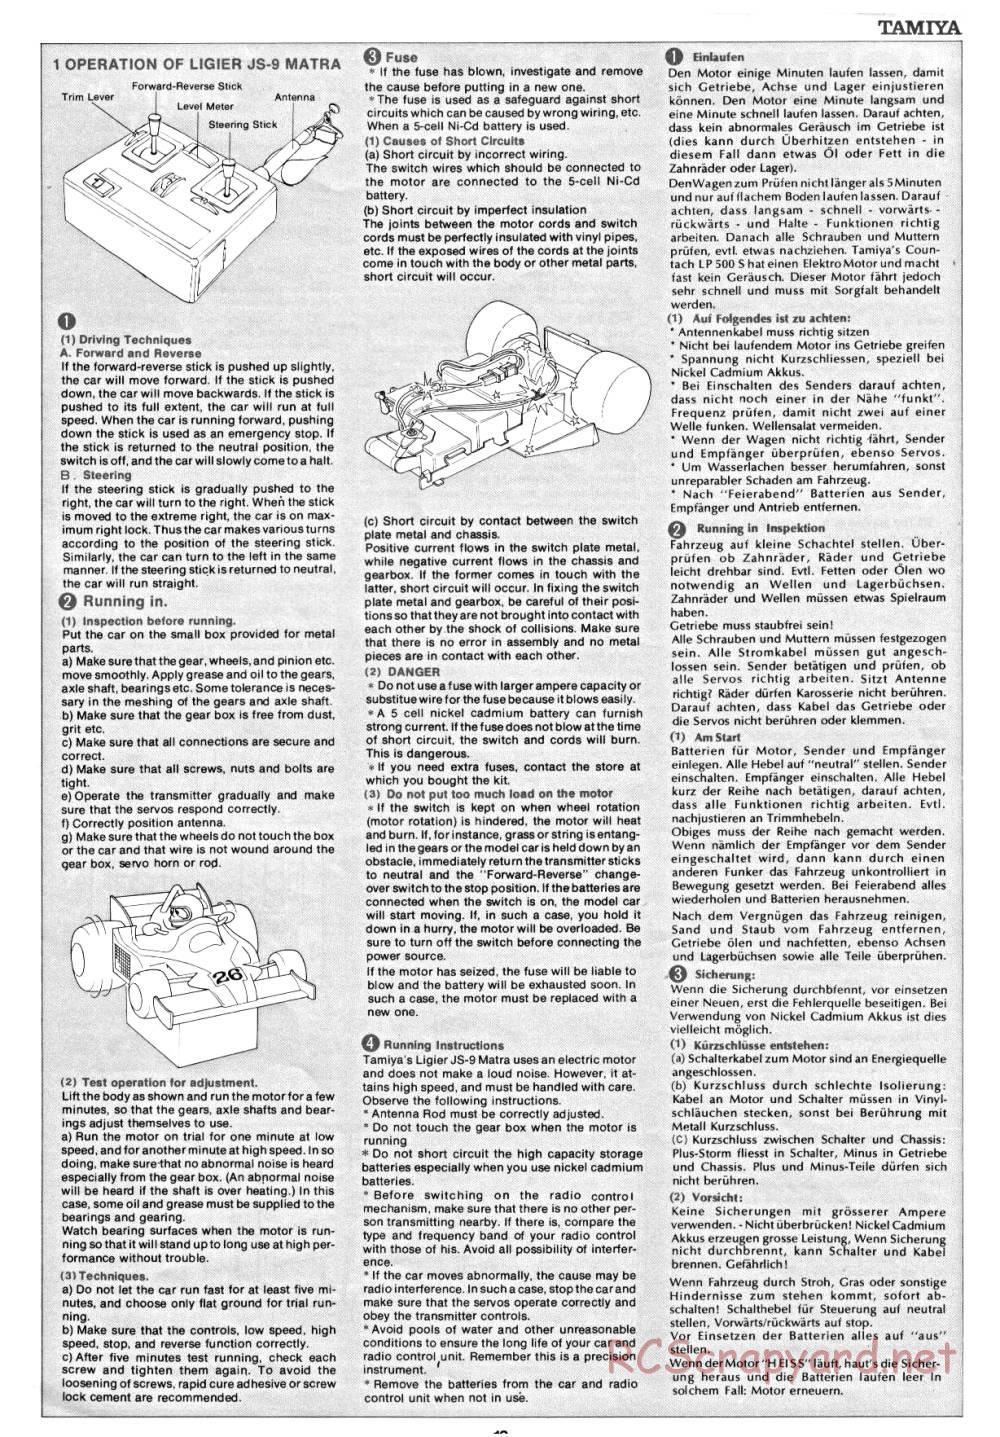 Tamiya - Ligier JS9 Matra - 58010 - Manual - Page 13